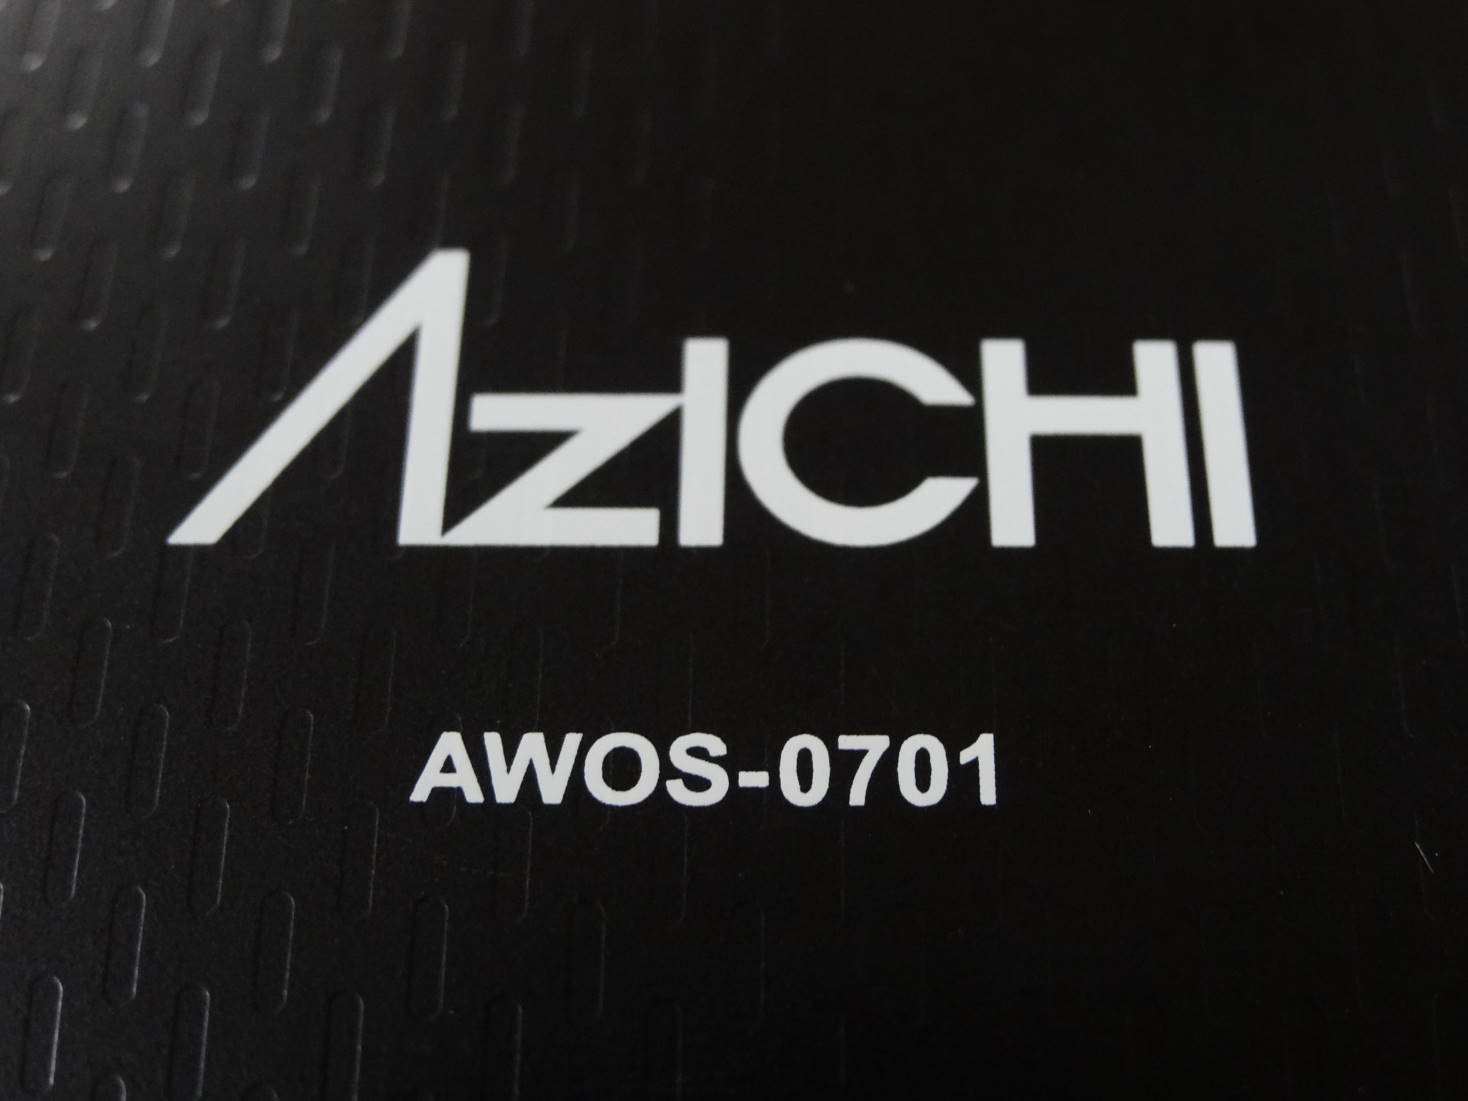 デュアルOSのタブレット ΛzICHI AWOS-0701専用保護シート作りました